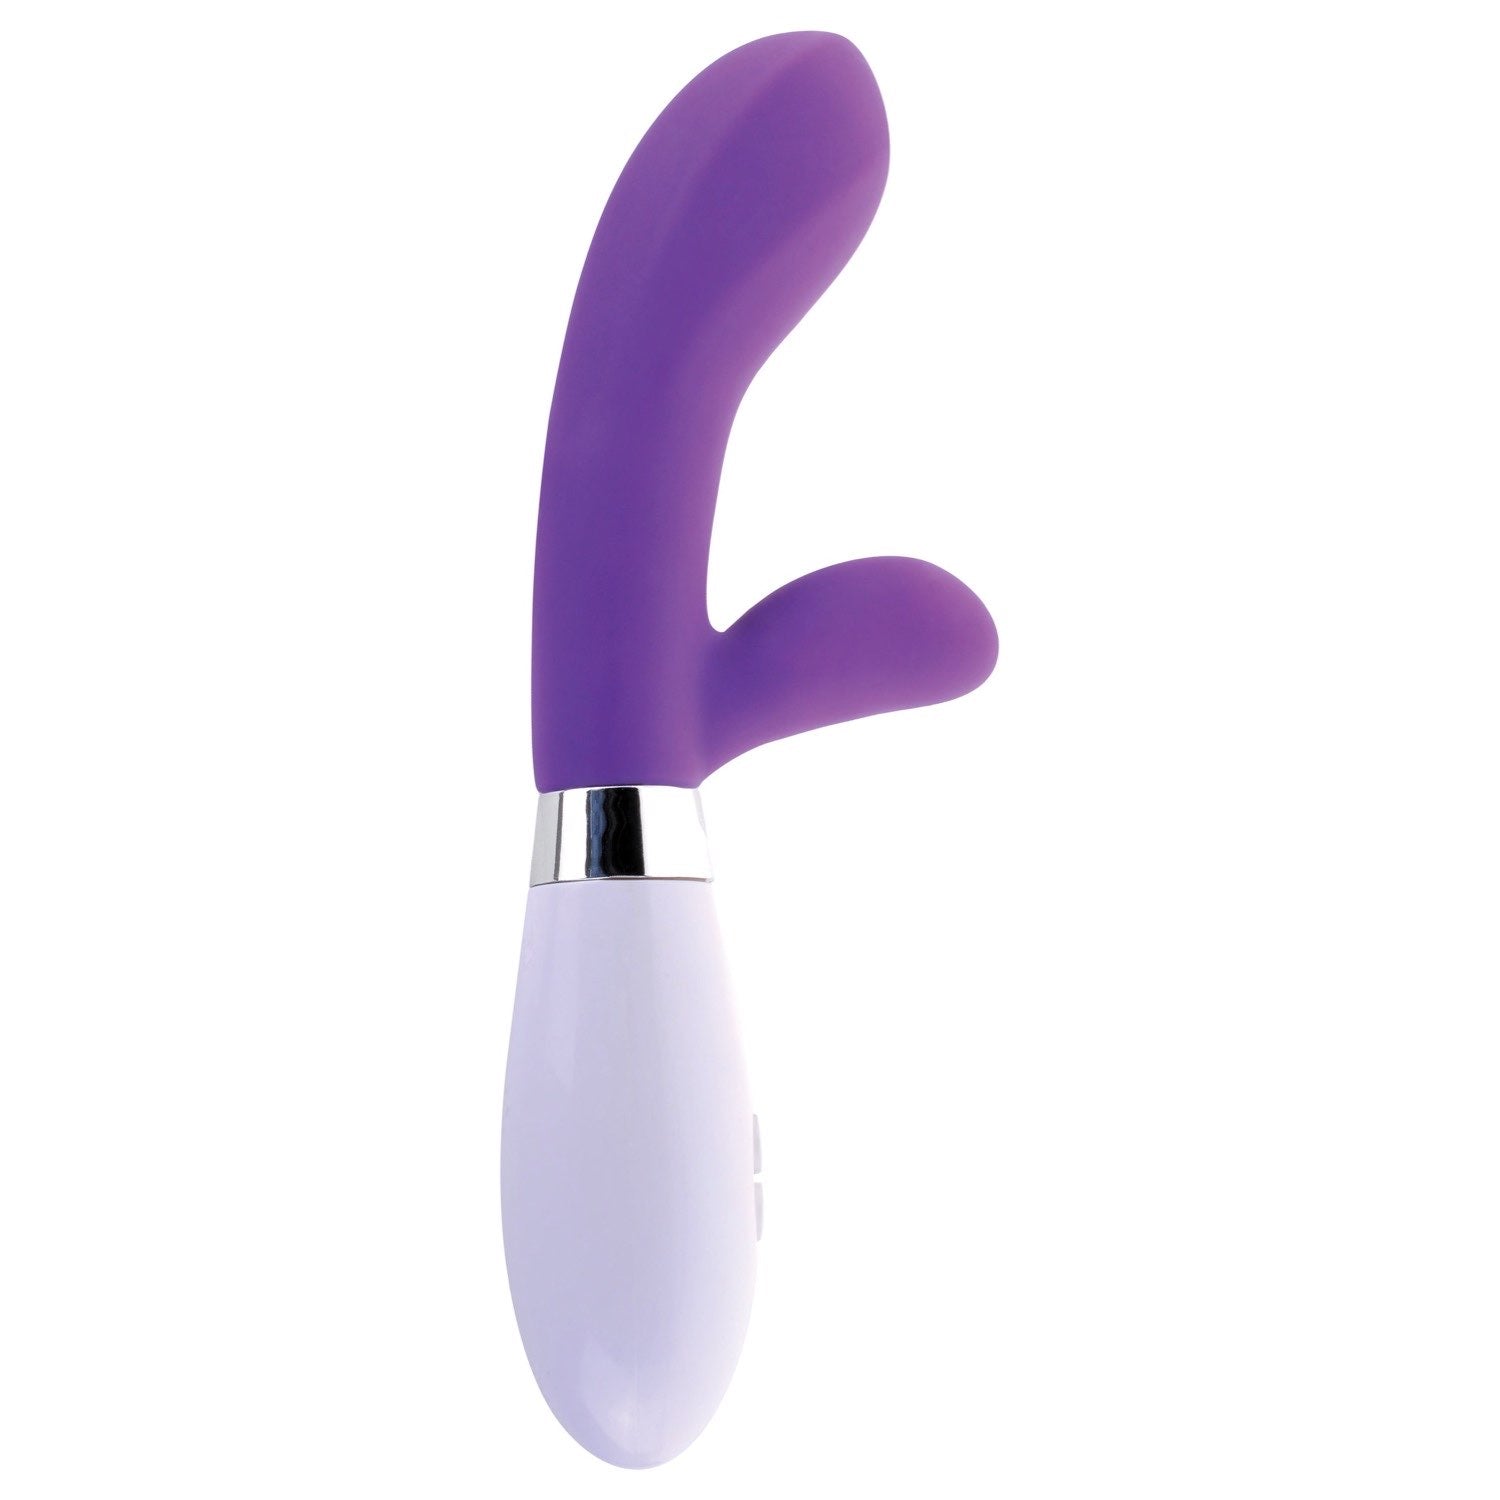 经典 硅胶 G 点兔子 - 紫色 20.3 厘米（8 英寸）兔子振动器 by Pipedream